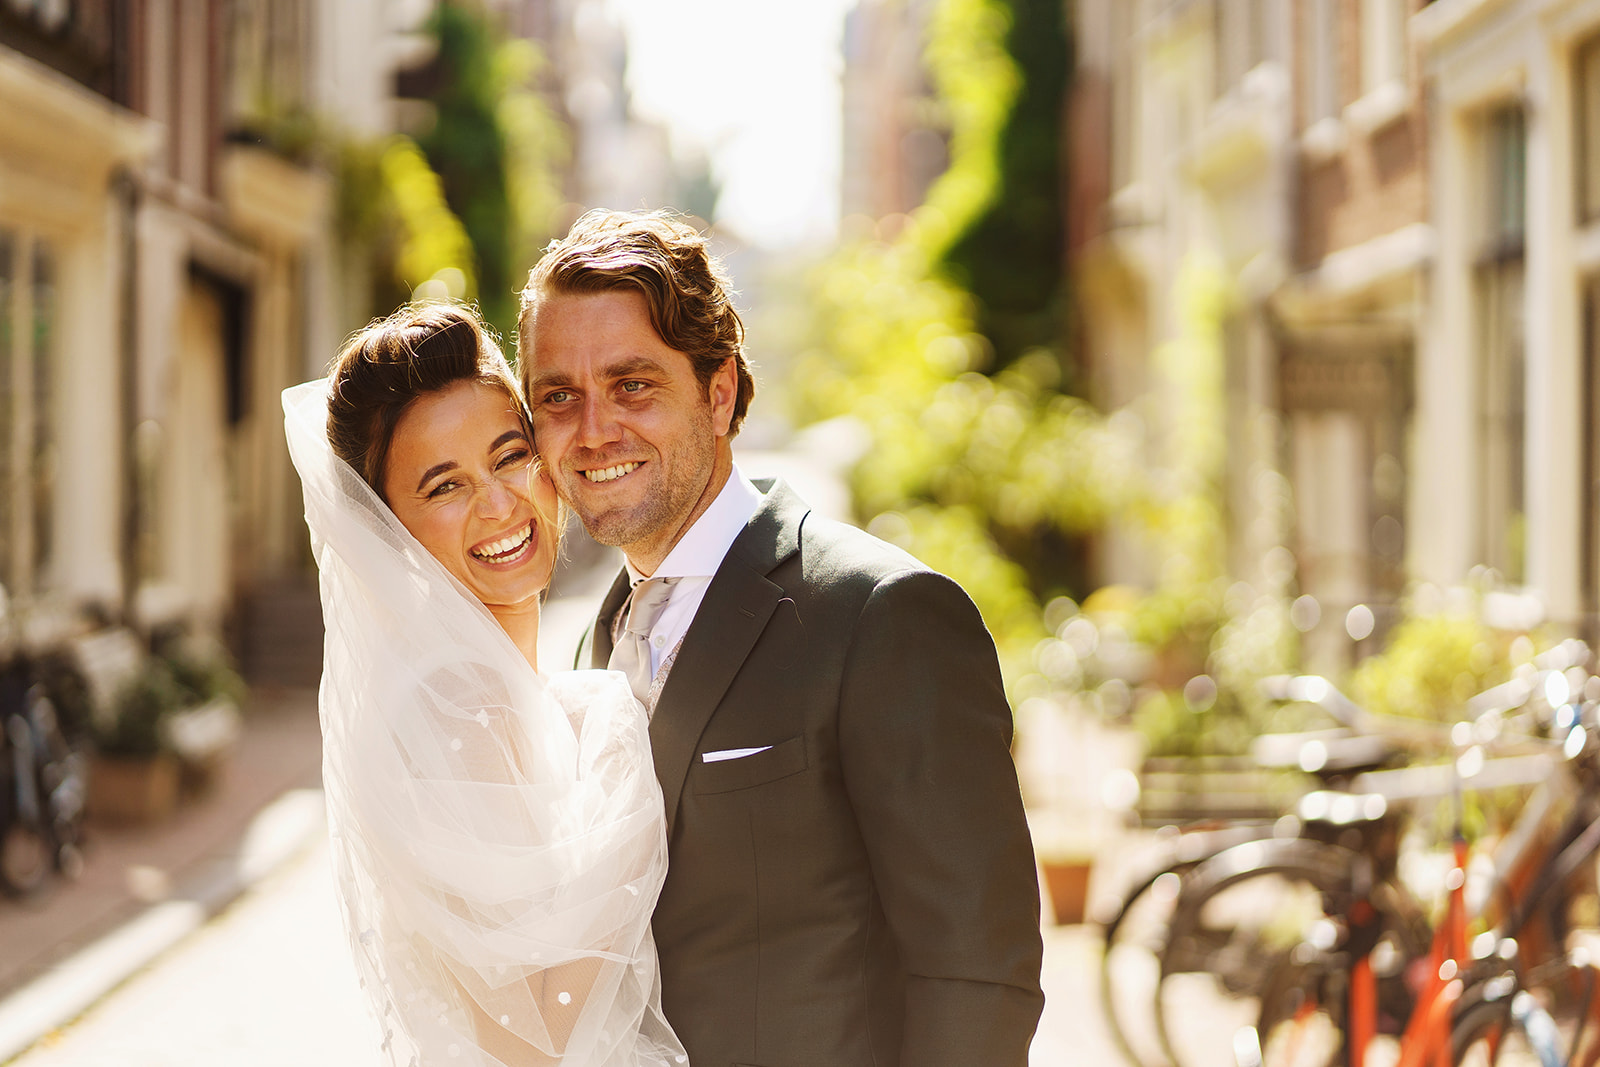 RUUDC Fotografie - Fotograaf in Amsterdam - fotoshoot met het bruidspaar